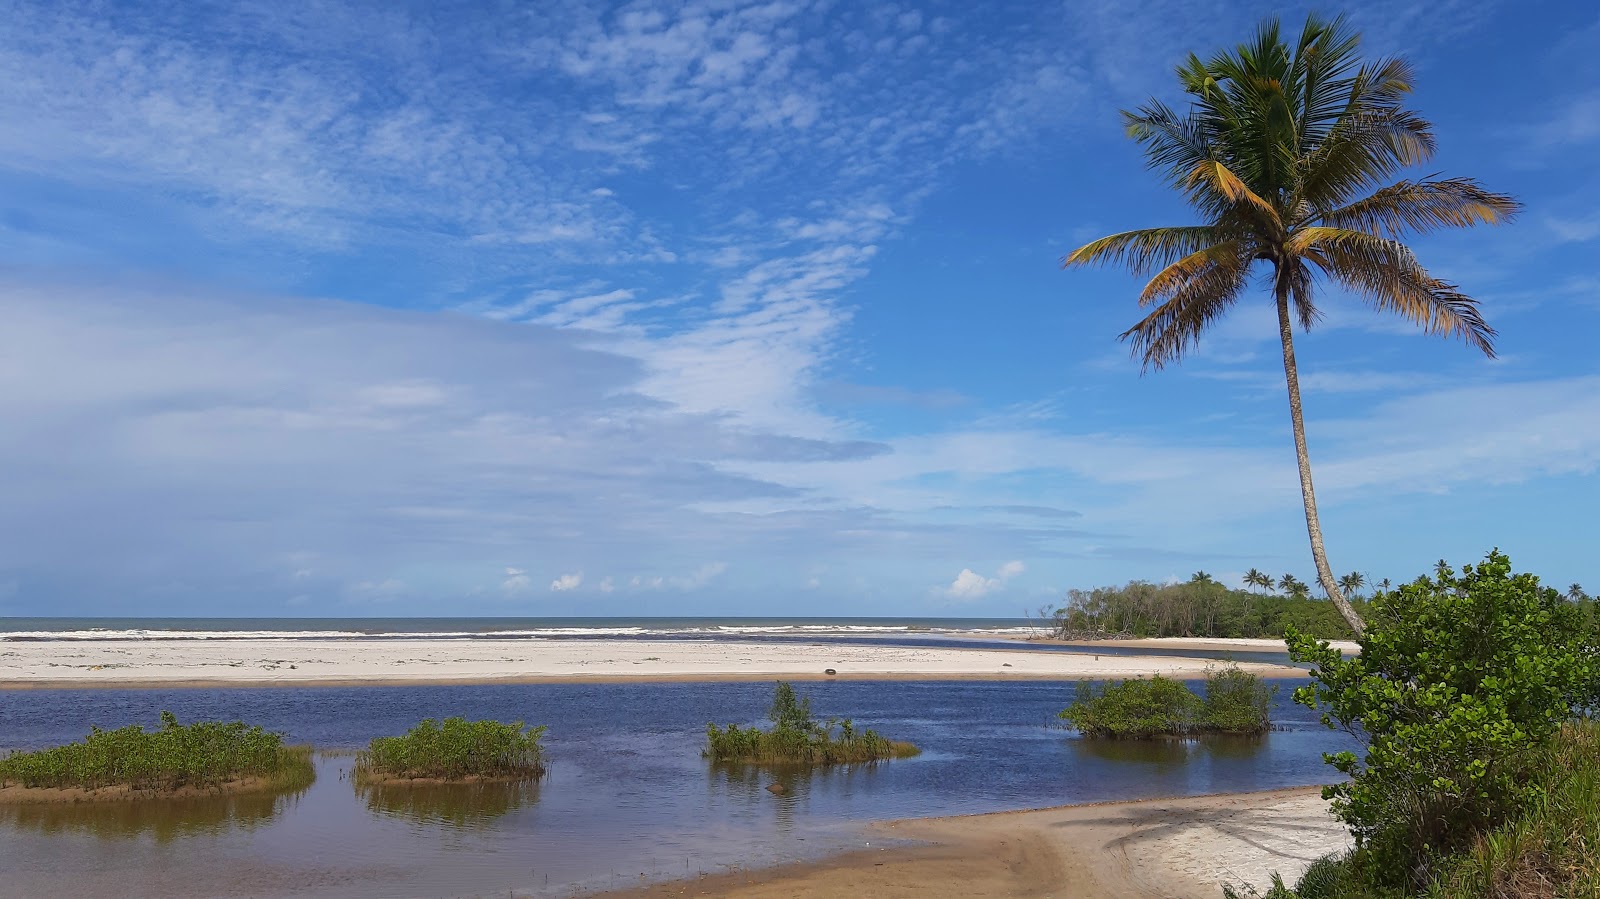 Zdjęcie Praia de Acuipe - popularne miejsce wśród znawców relaksu